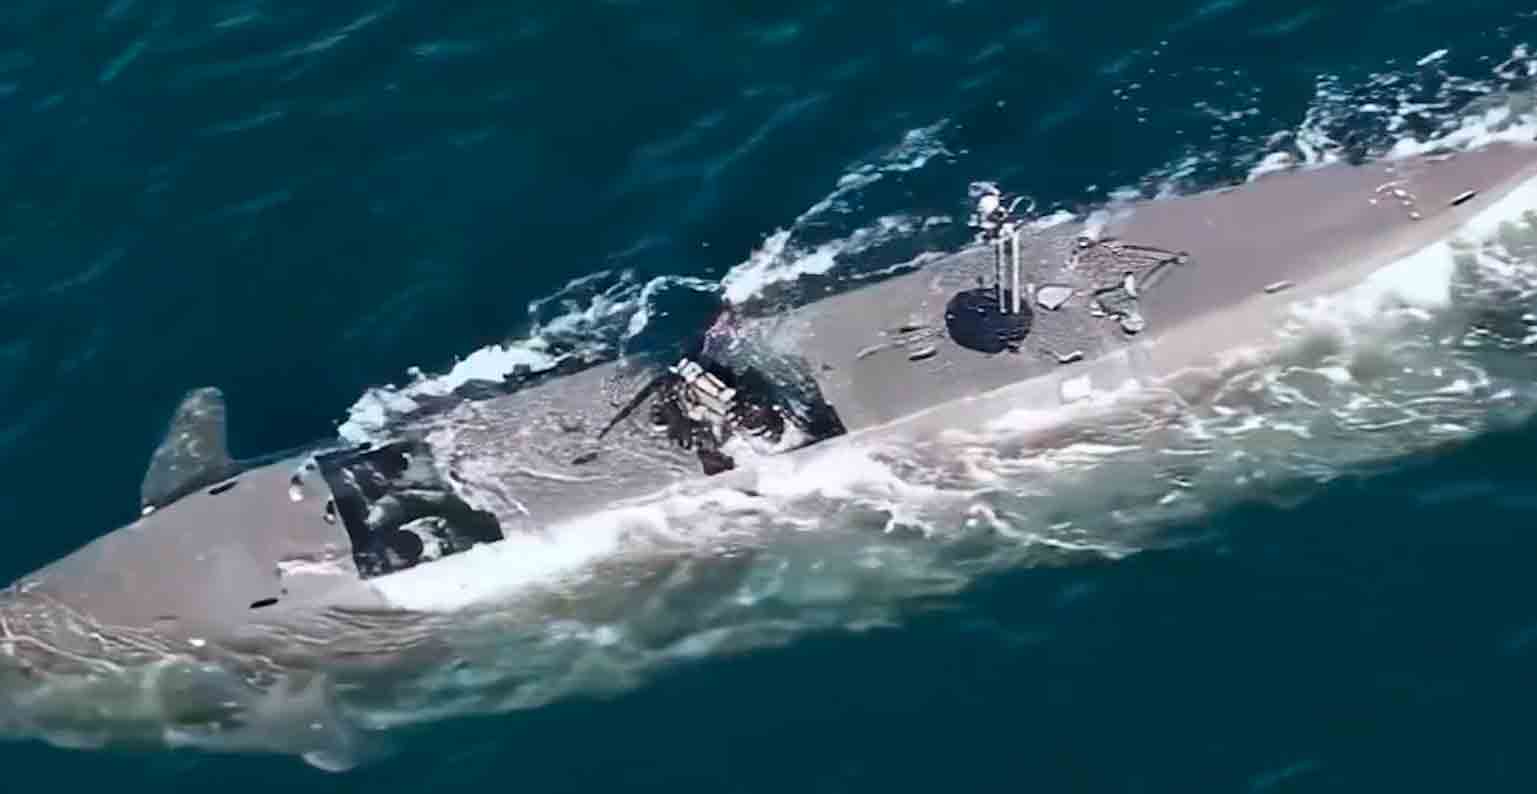 Βίντεο από τον Σουηδικό Στρατό δείχνει σκάφος των ειδικών δυνάμεων που μπορεί να λειτουργήσει ως υποβρύχιο